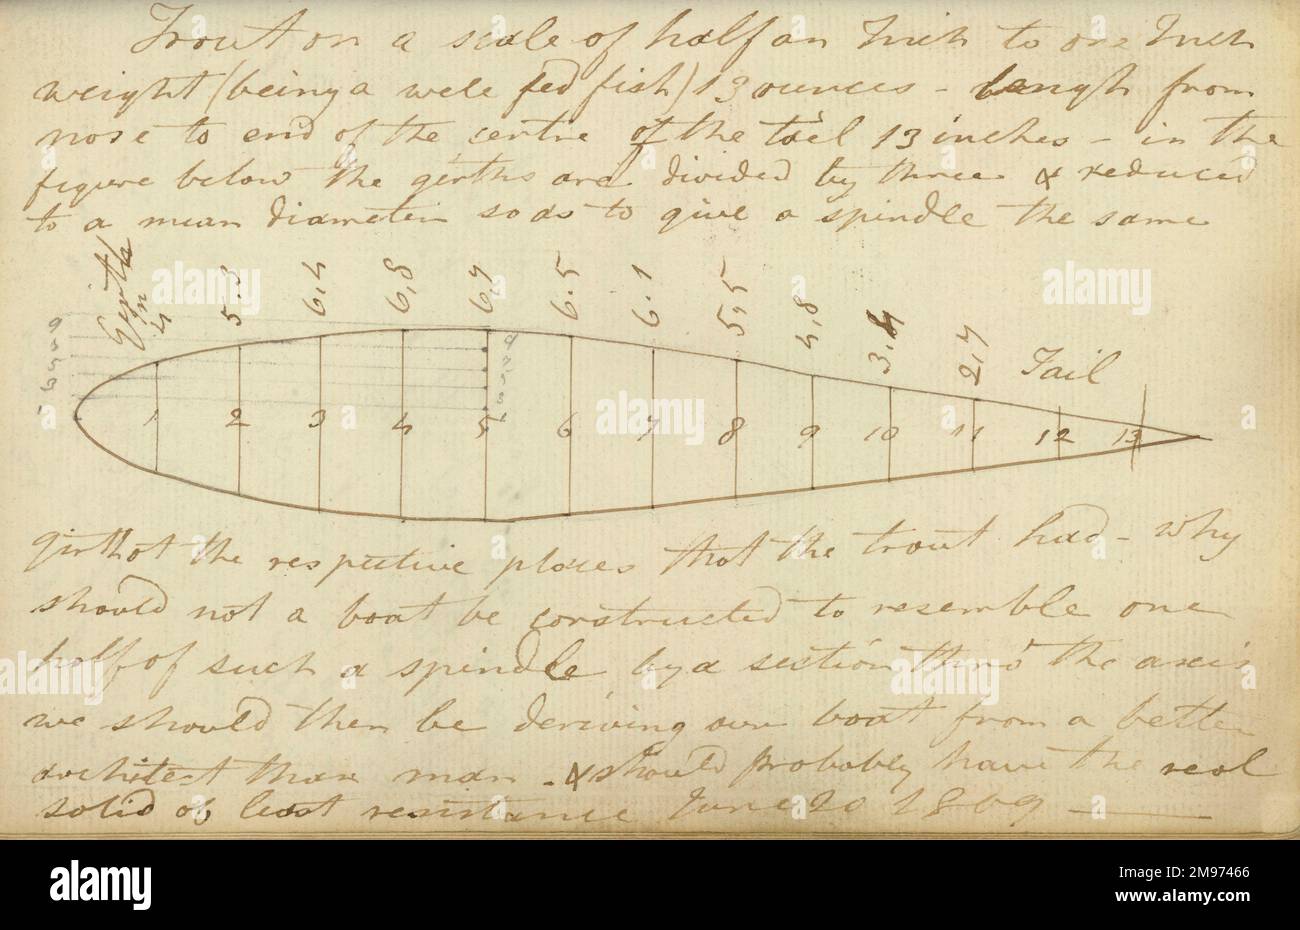 Konstruktion für einen Volumenkörper mit dem geringsten Widerstand, basierend auf der Form einer Forelle. 1809. Aus Cayleys Original-Notizbuch. Stockfoto